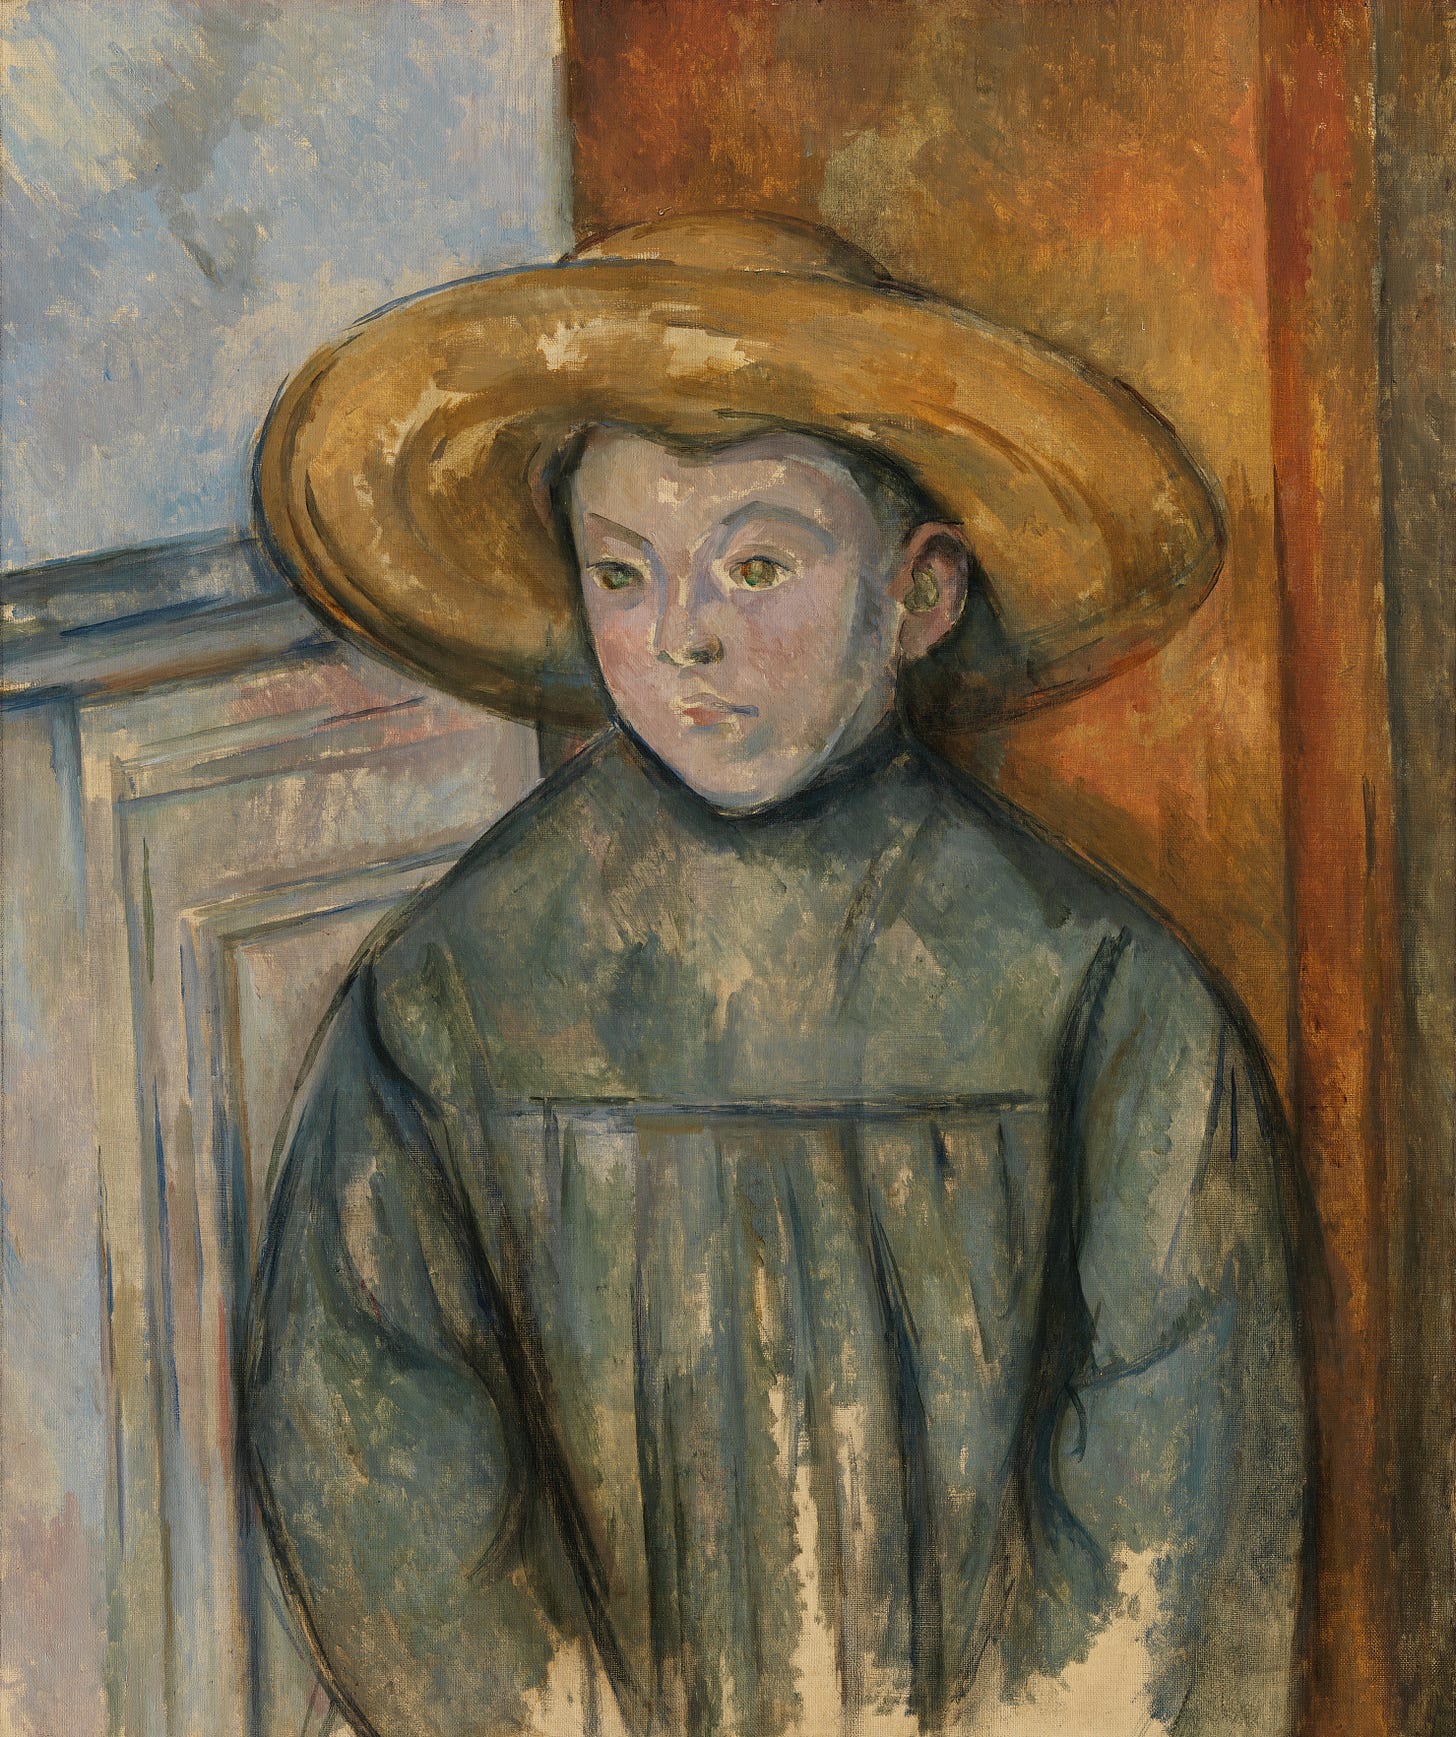 Boy With a Straw Hat (1896) by Paul Cézanne